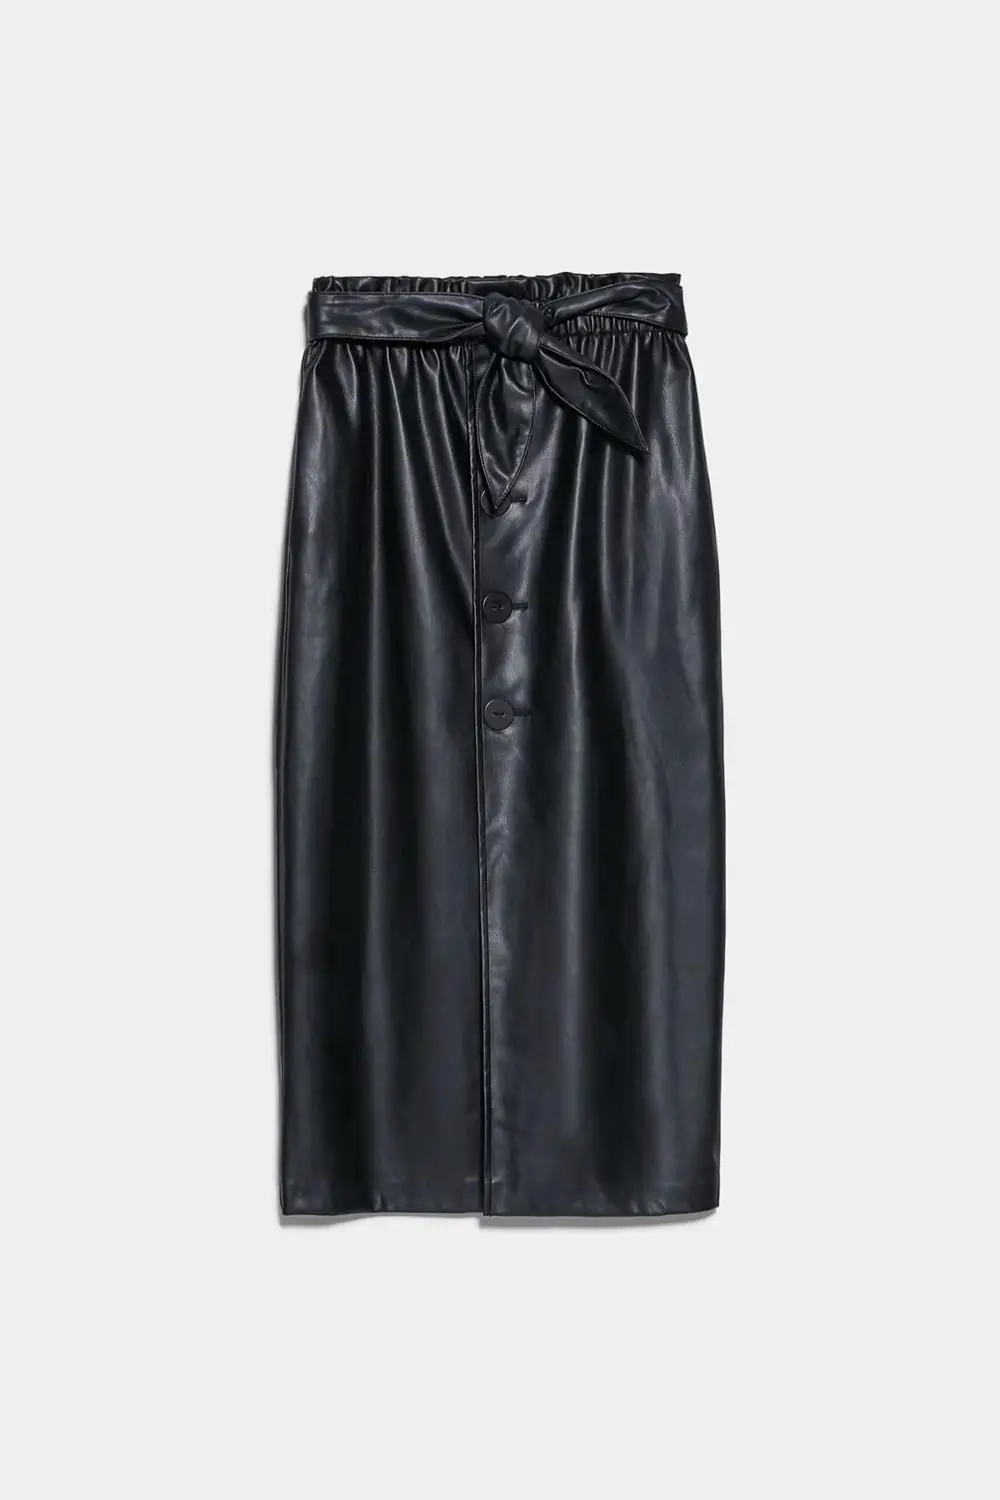 Осень, женская новая ретро юбка средней длины с высокой талией и бантом из искусственной кожи, бумажный мешок, юбка с эластичным поясом, 05427256800 - Цвет: Черный